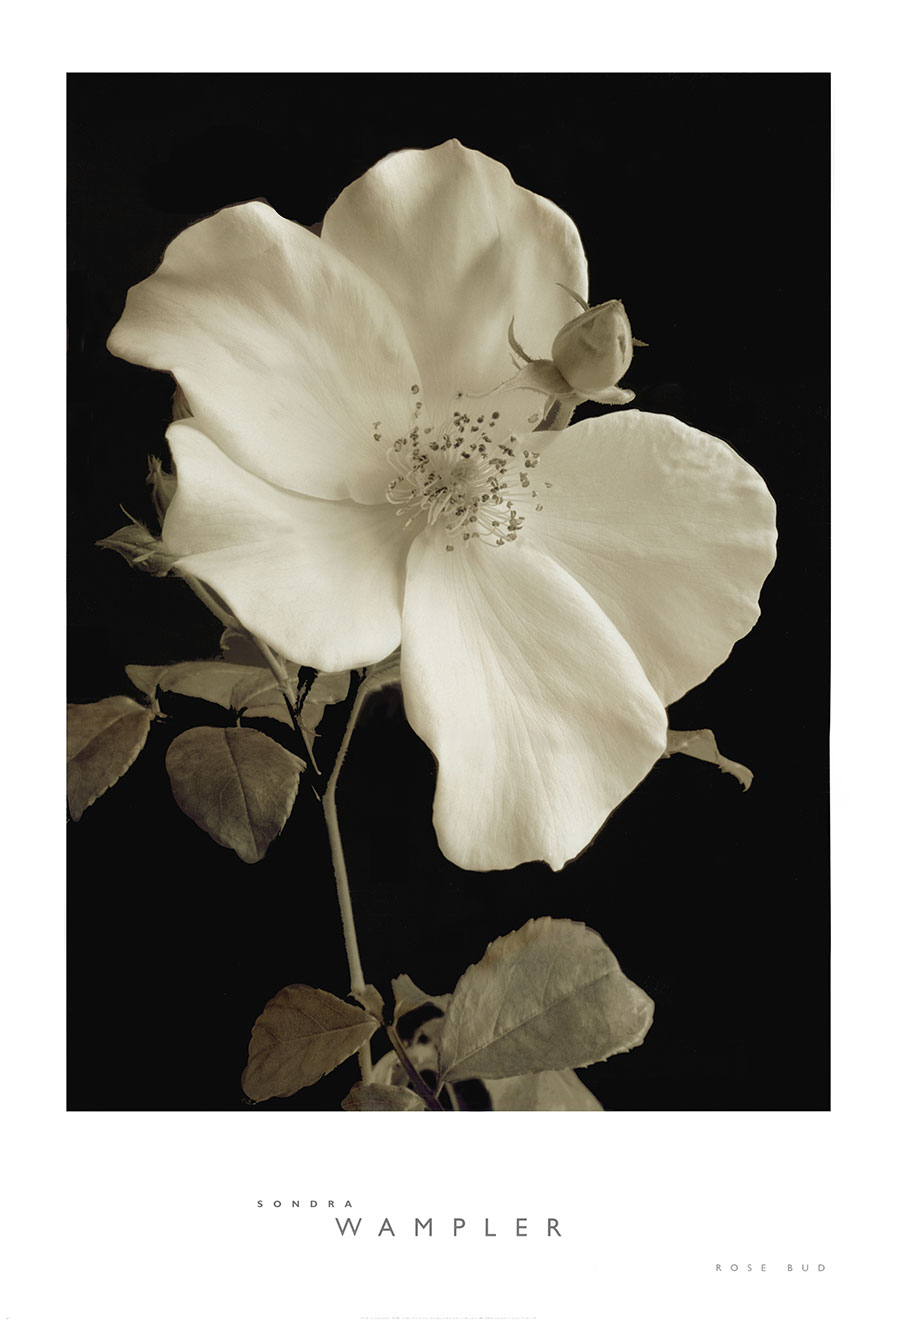 高清黑白花卉摄影素材: 玉兰花